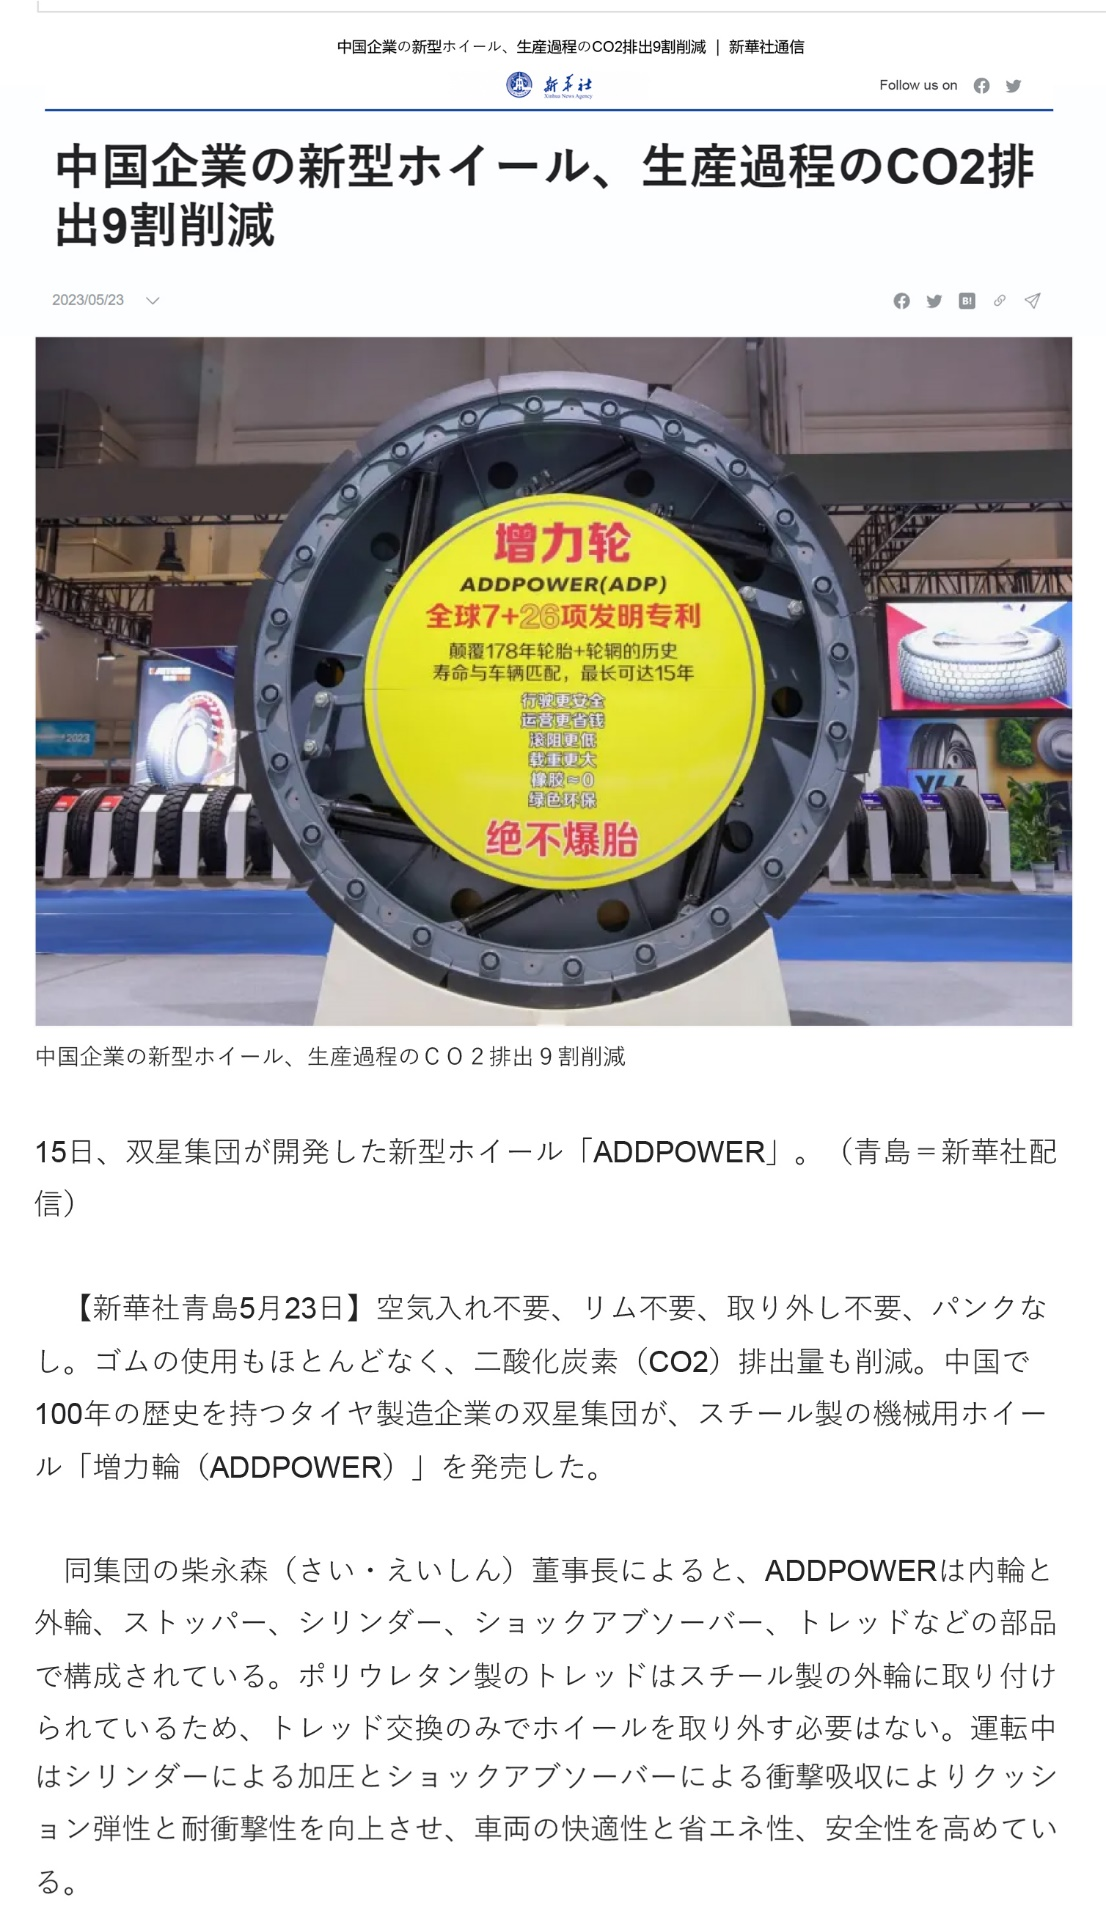 新华社日语网站报道双星“增力轮”——中国公司推出新型车轮 生产过程中二氧化碳排放量减少90%